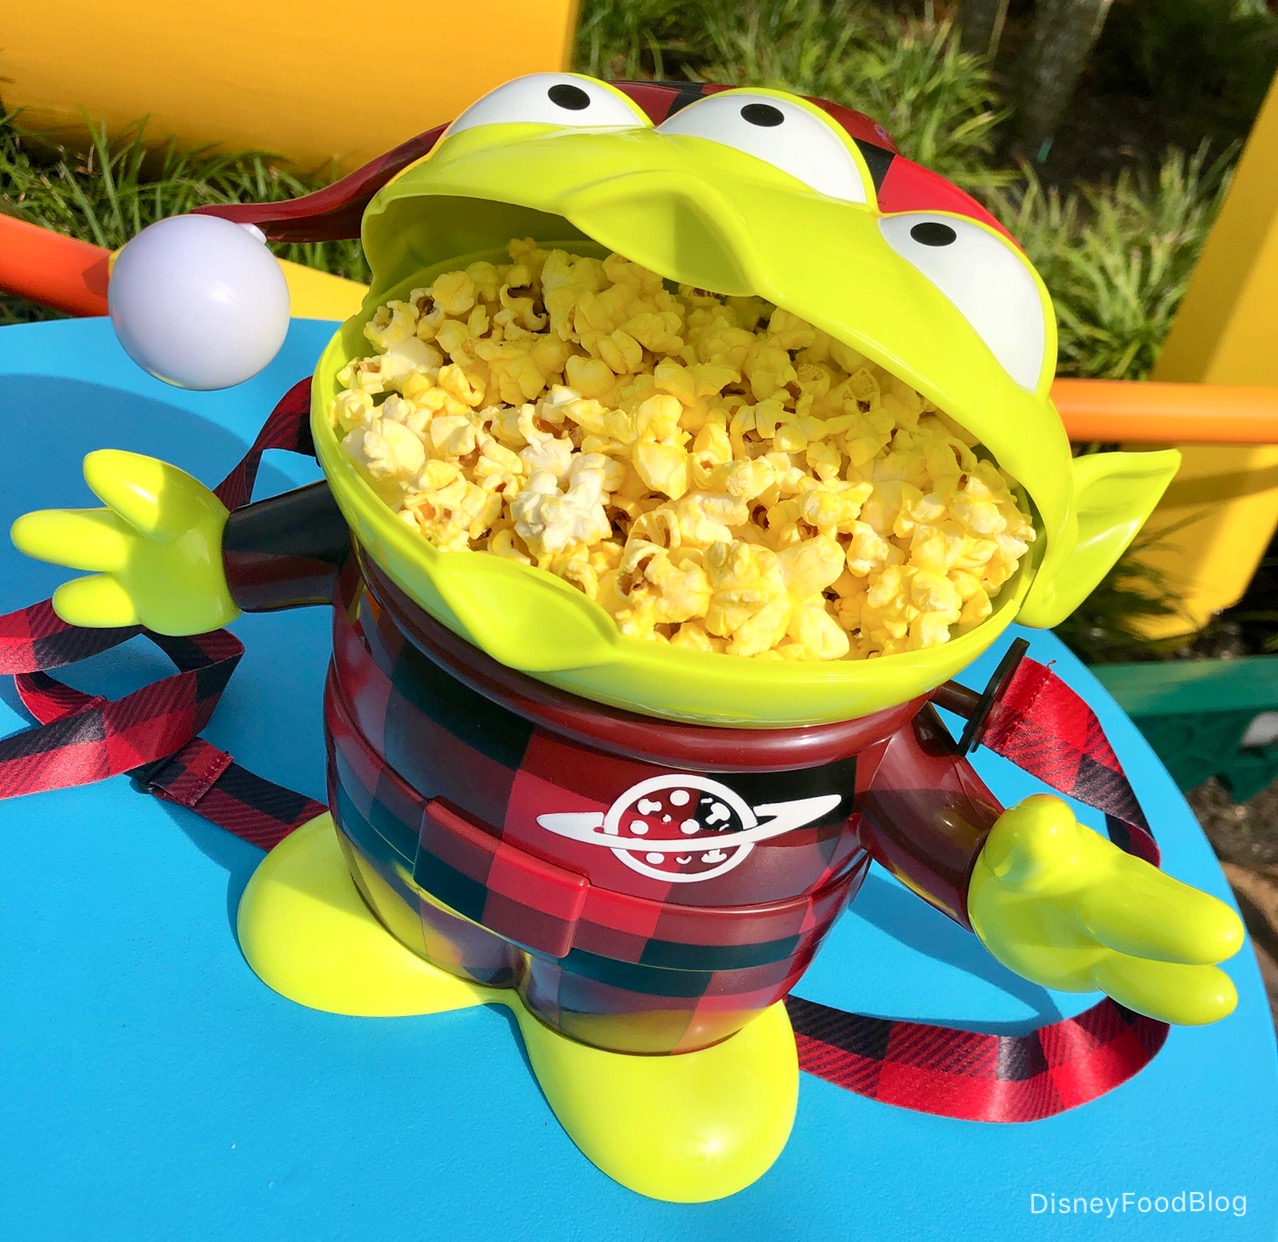 OoOoO! The Buffalo Plaid Alien Holiday Popcorn Bucket Is